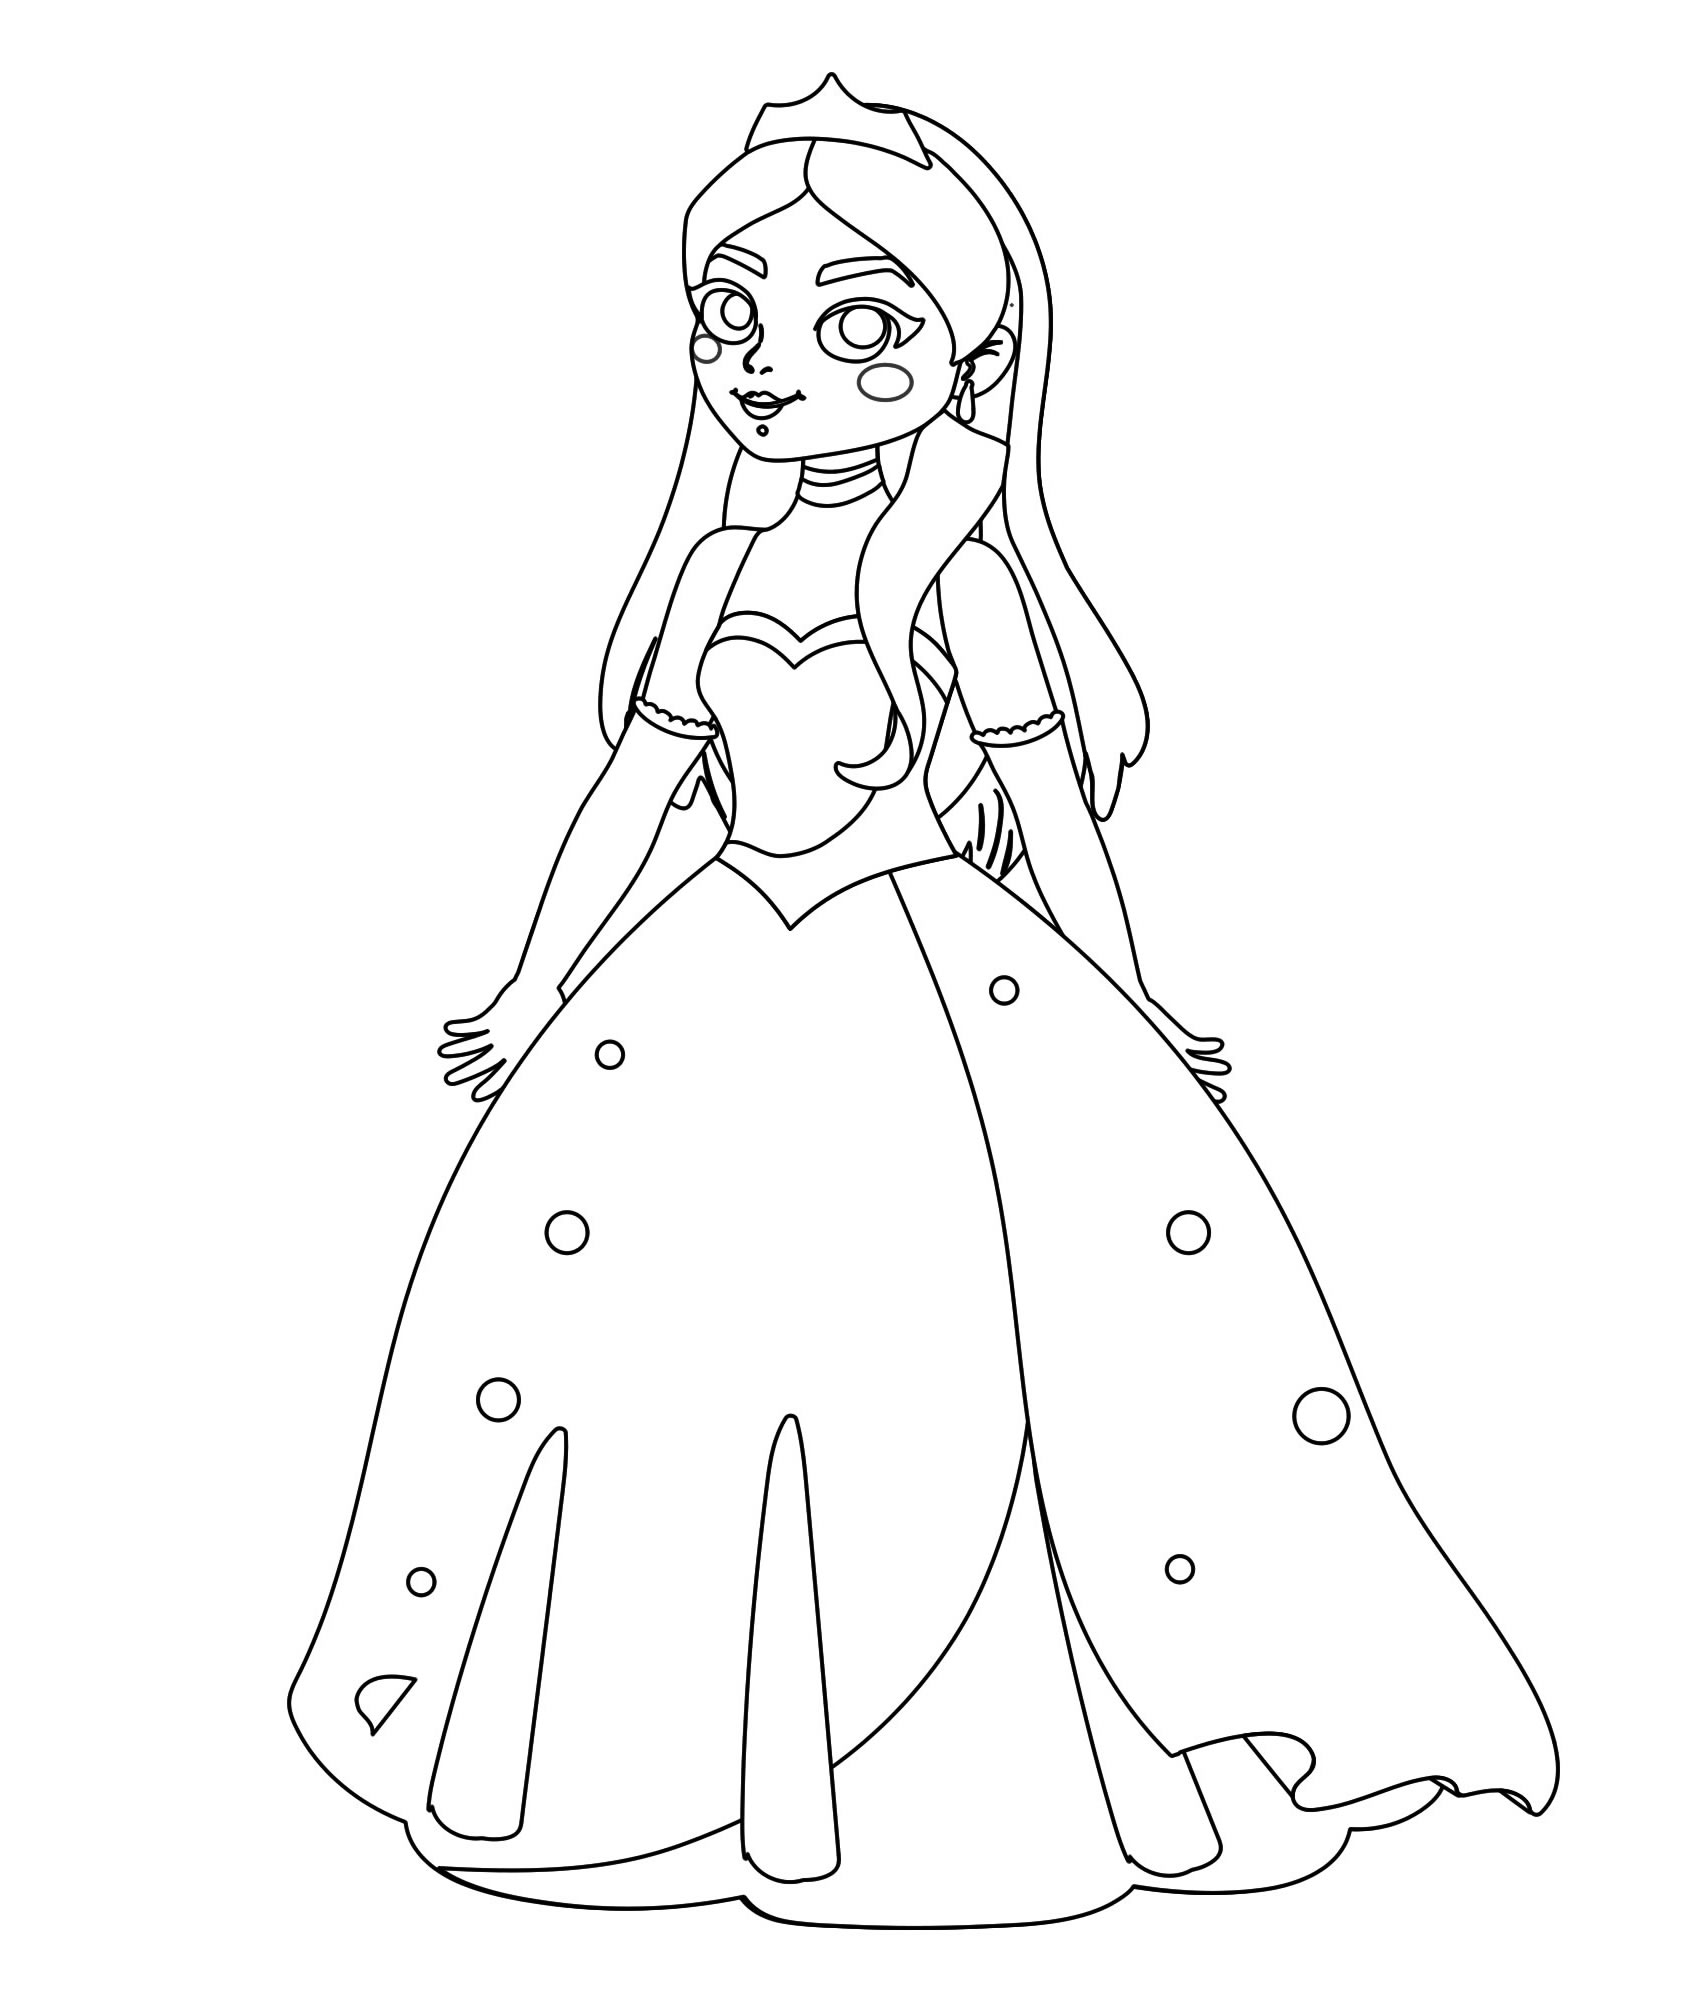 Принцесса с диадемой раскраска для детей